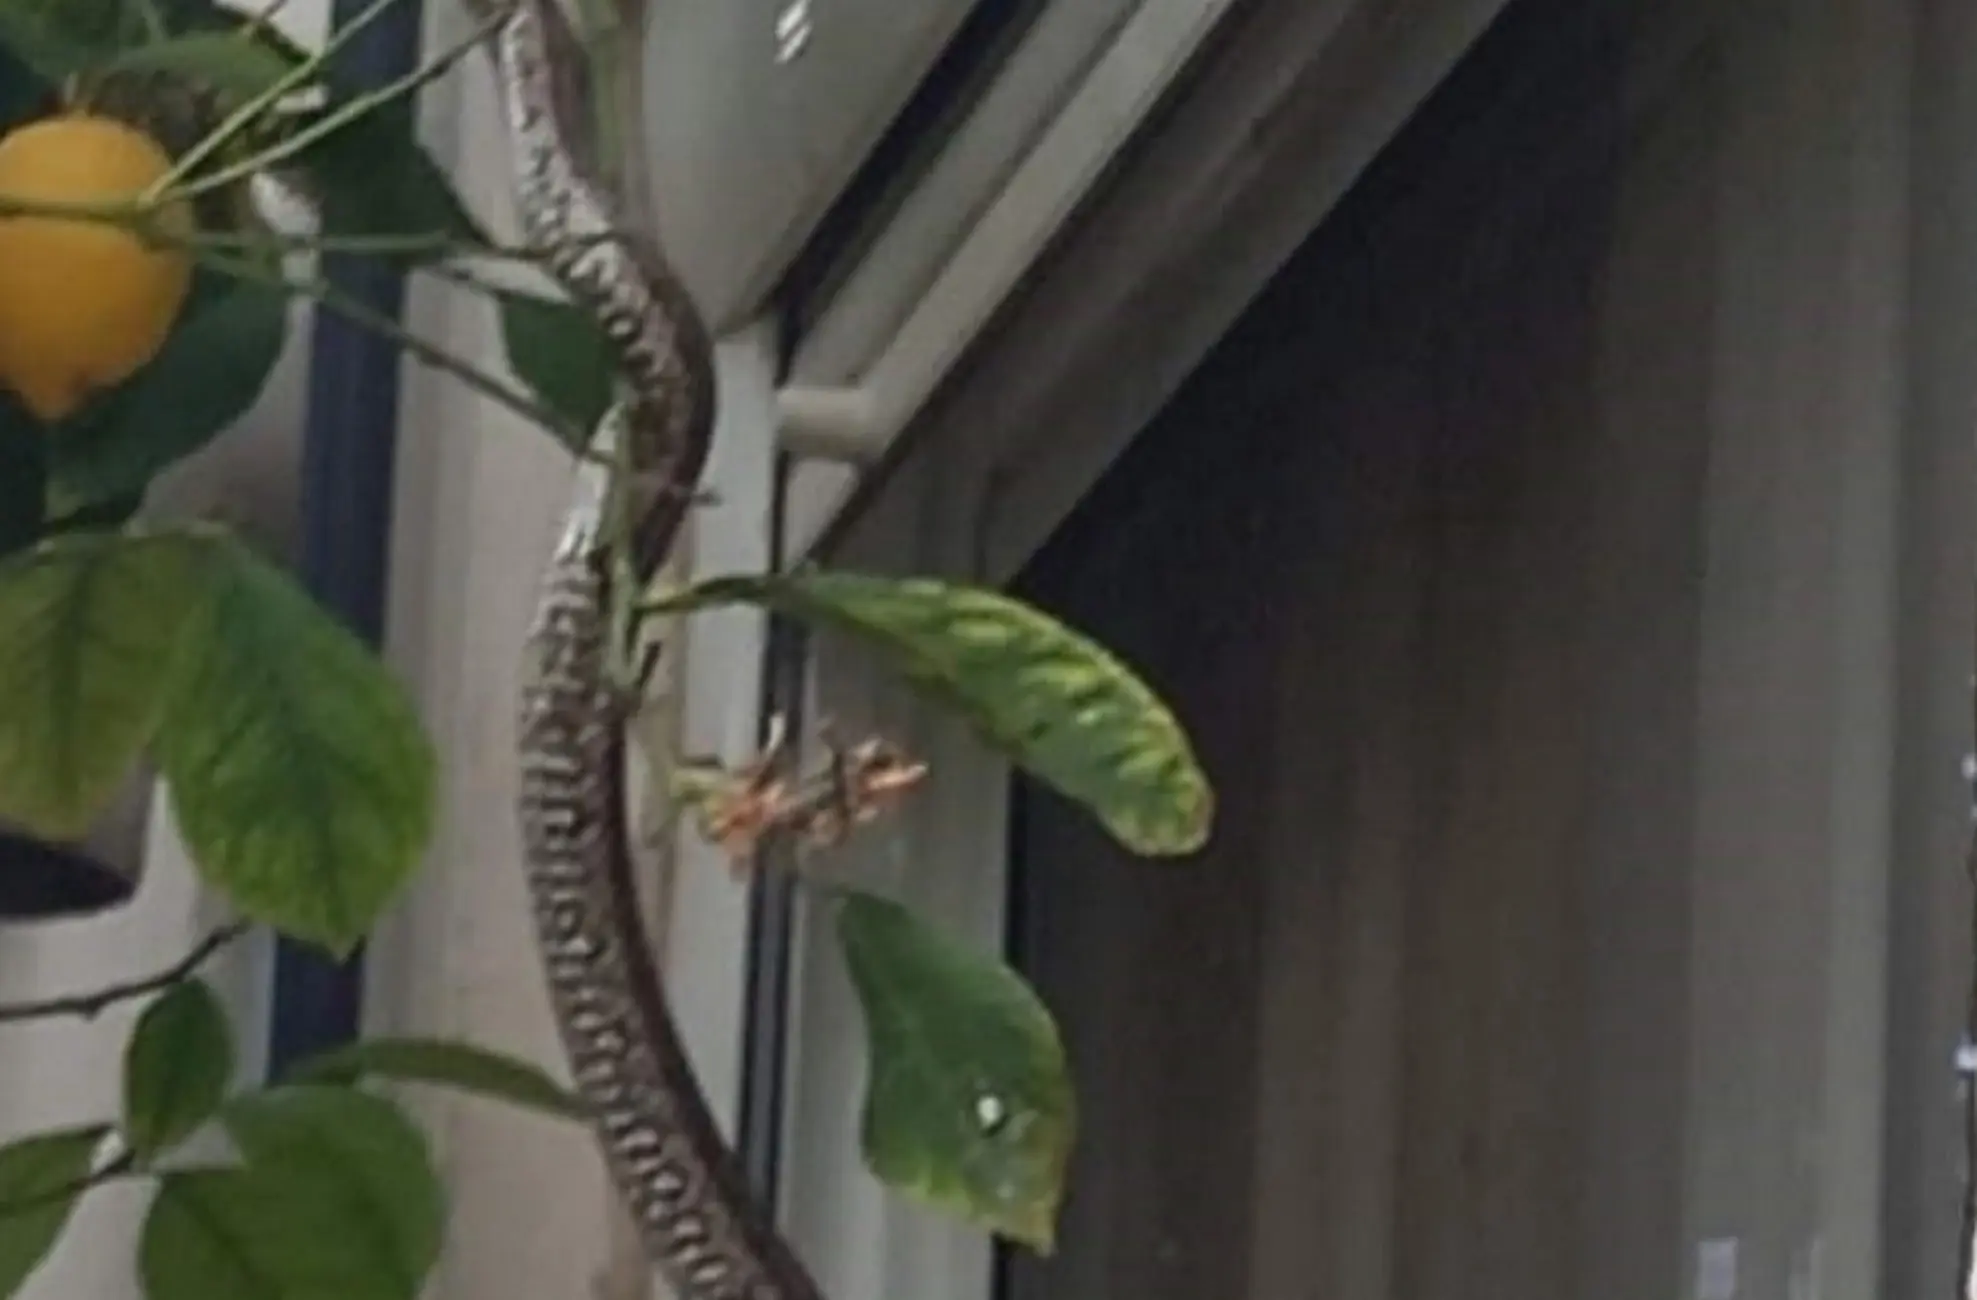 Τρόμος στο Μεσολόγγι: Φίδι σκαρφάλωσε σε παράθυρο σπιτιού την ώρα που έτρωγε οικογένεια (φωτο)